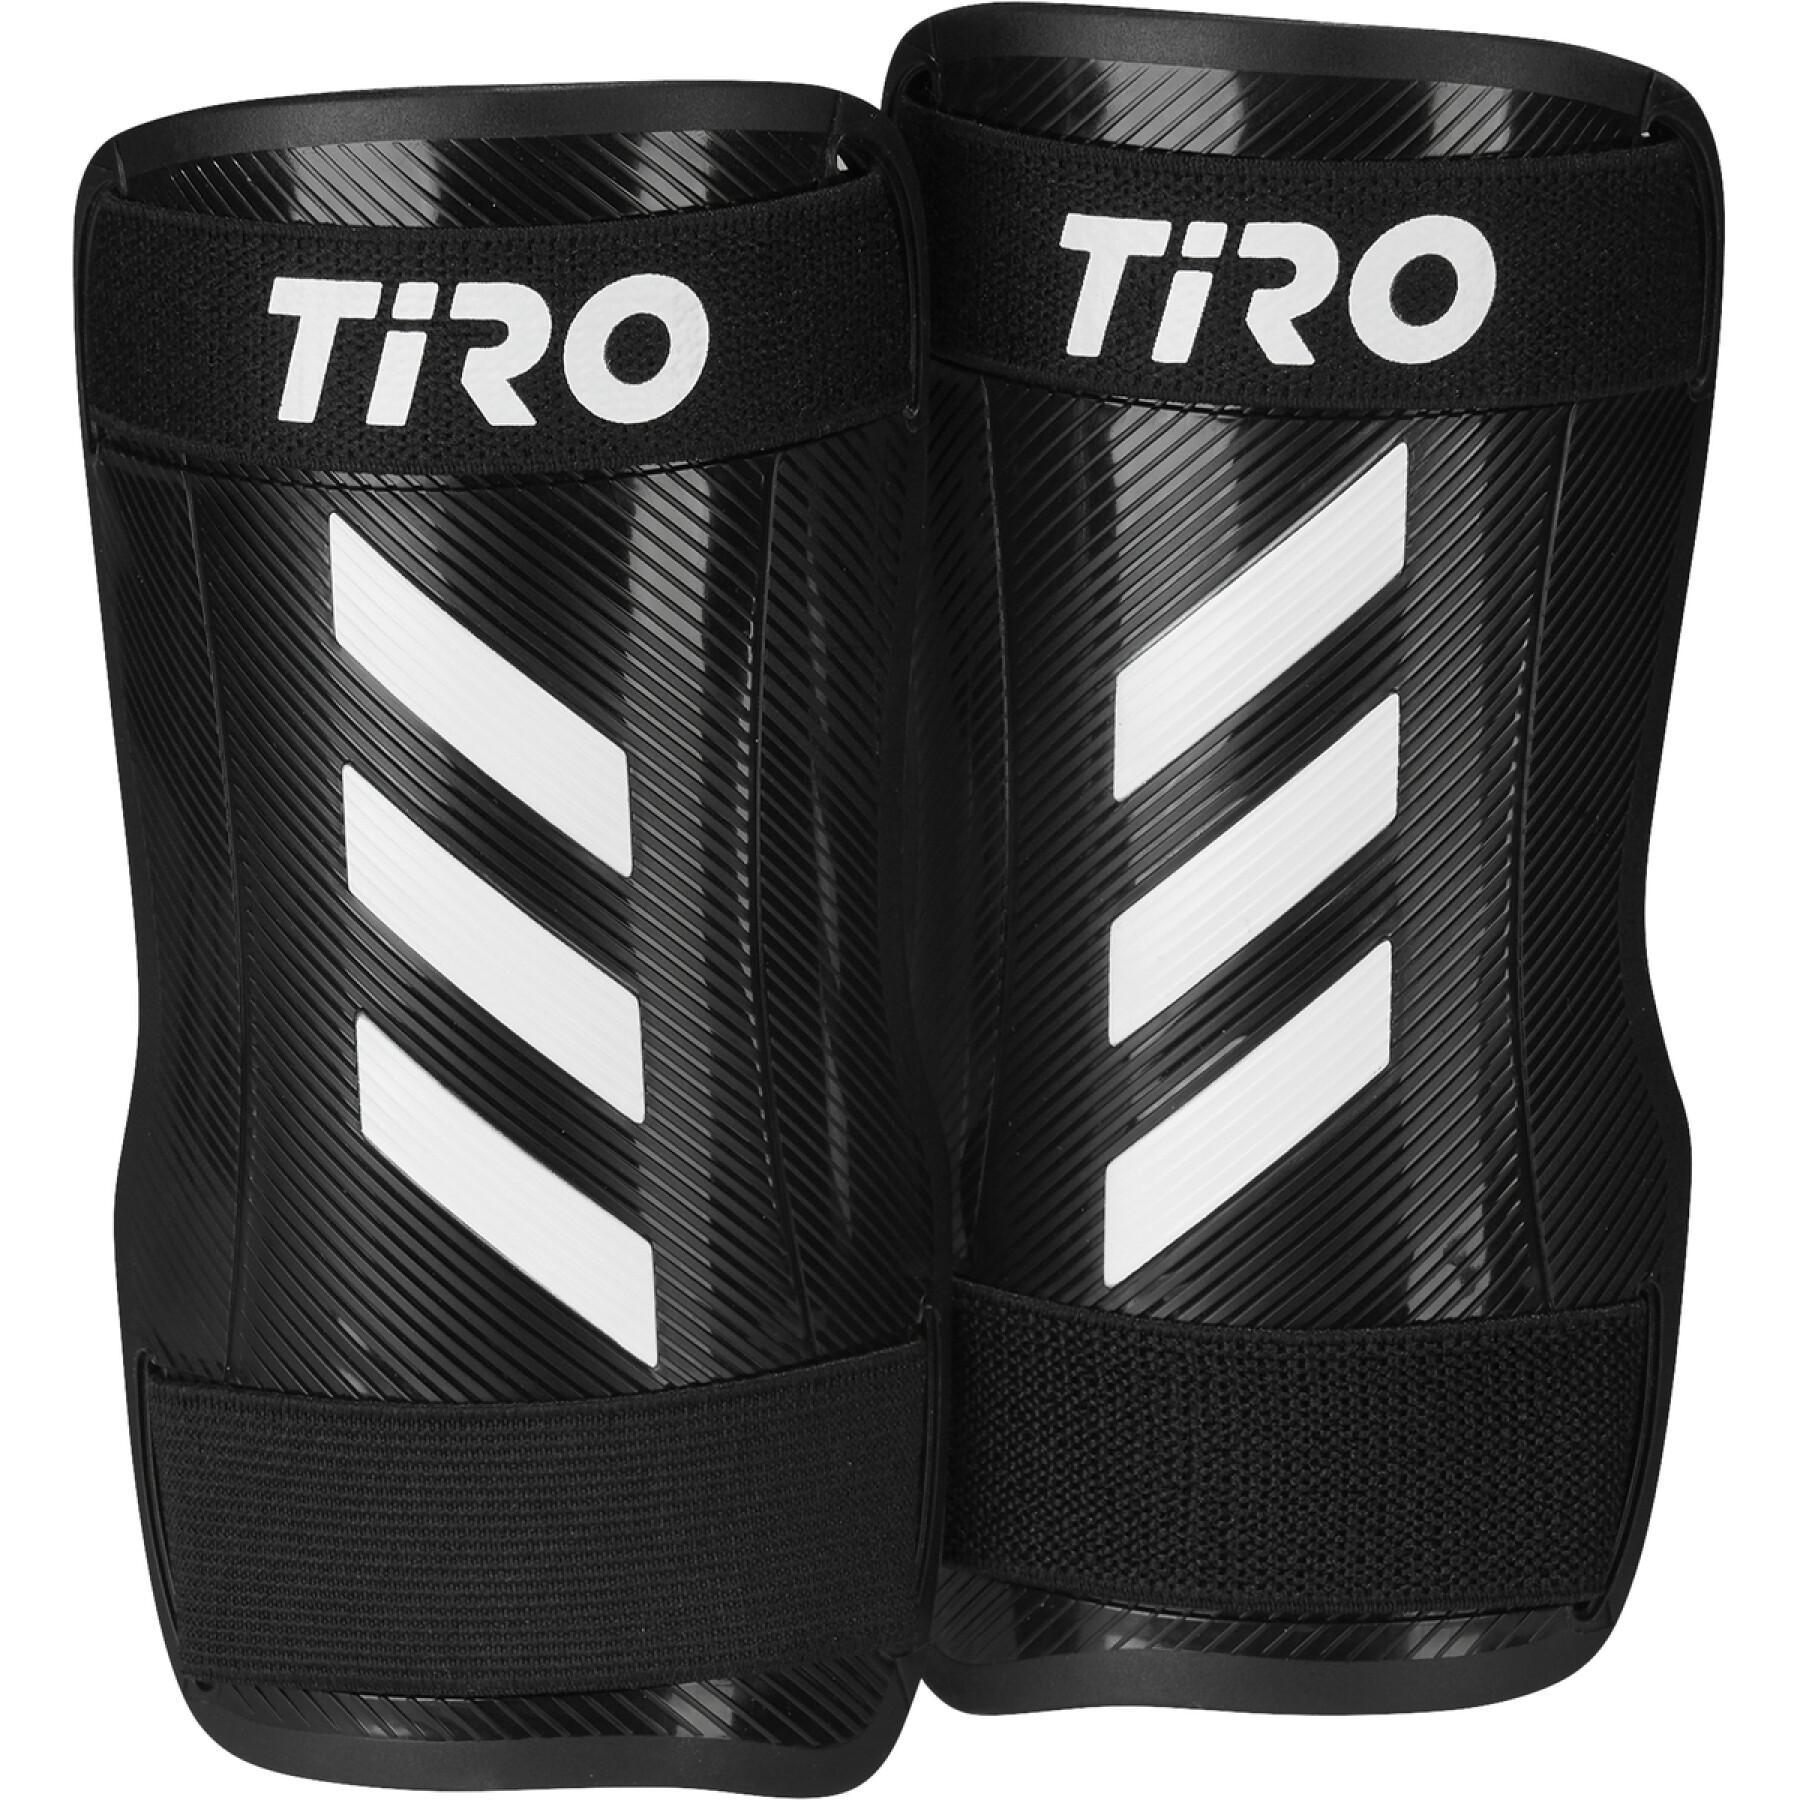 Shin guards adidas Tiro Training